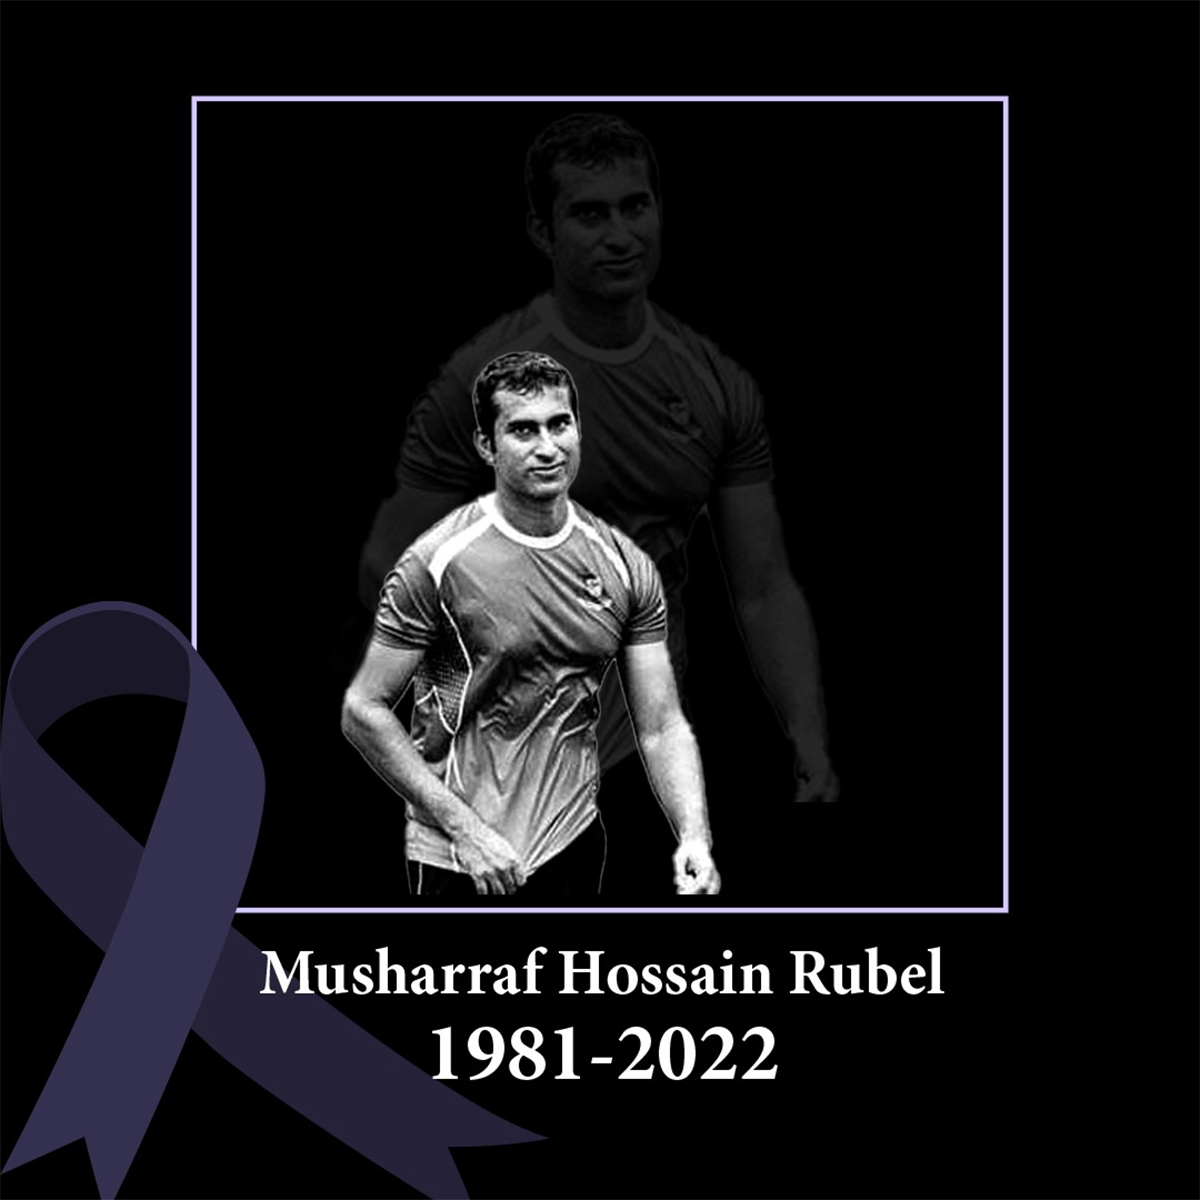 Mosharraf Hossain Rubel was suffering from brain cancer